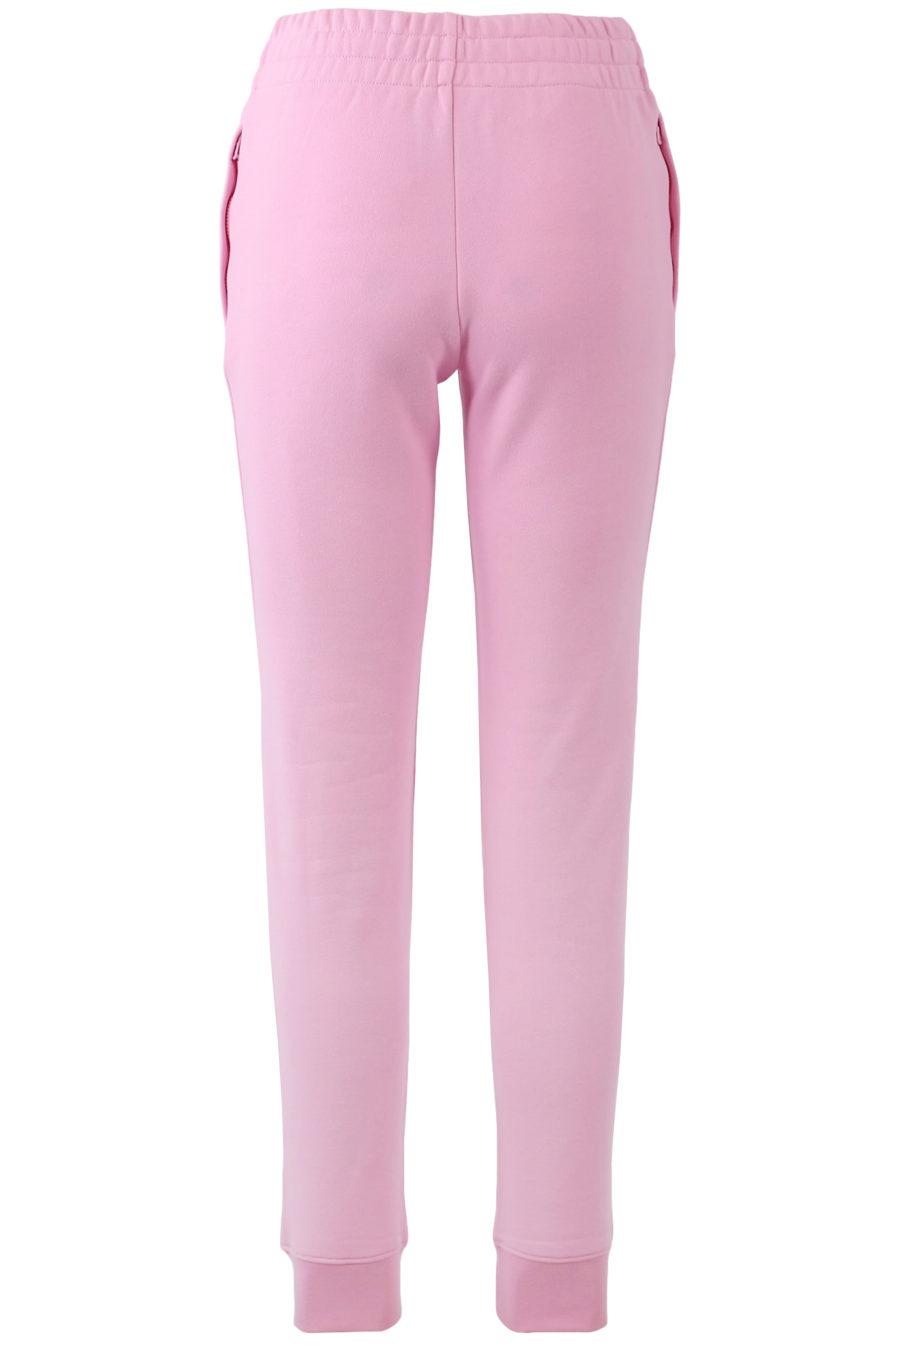 Pantalon rose avec logo en cristaux - copie IMG 7276